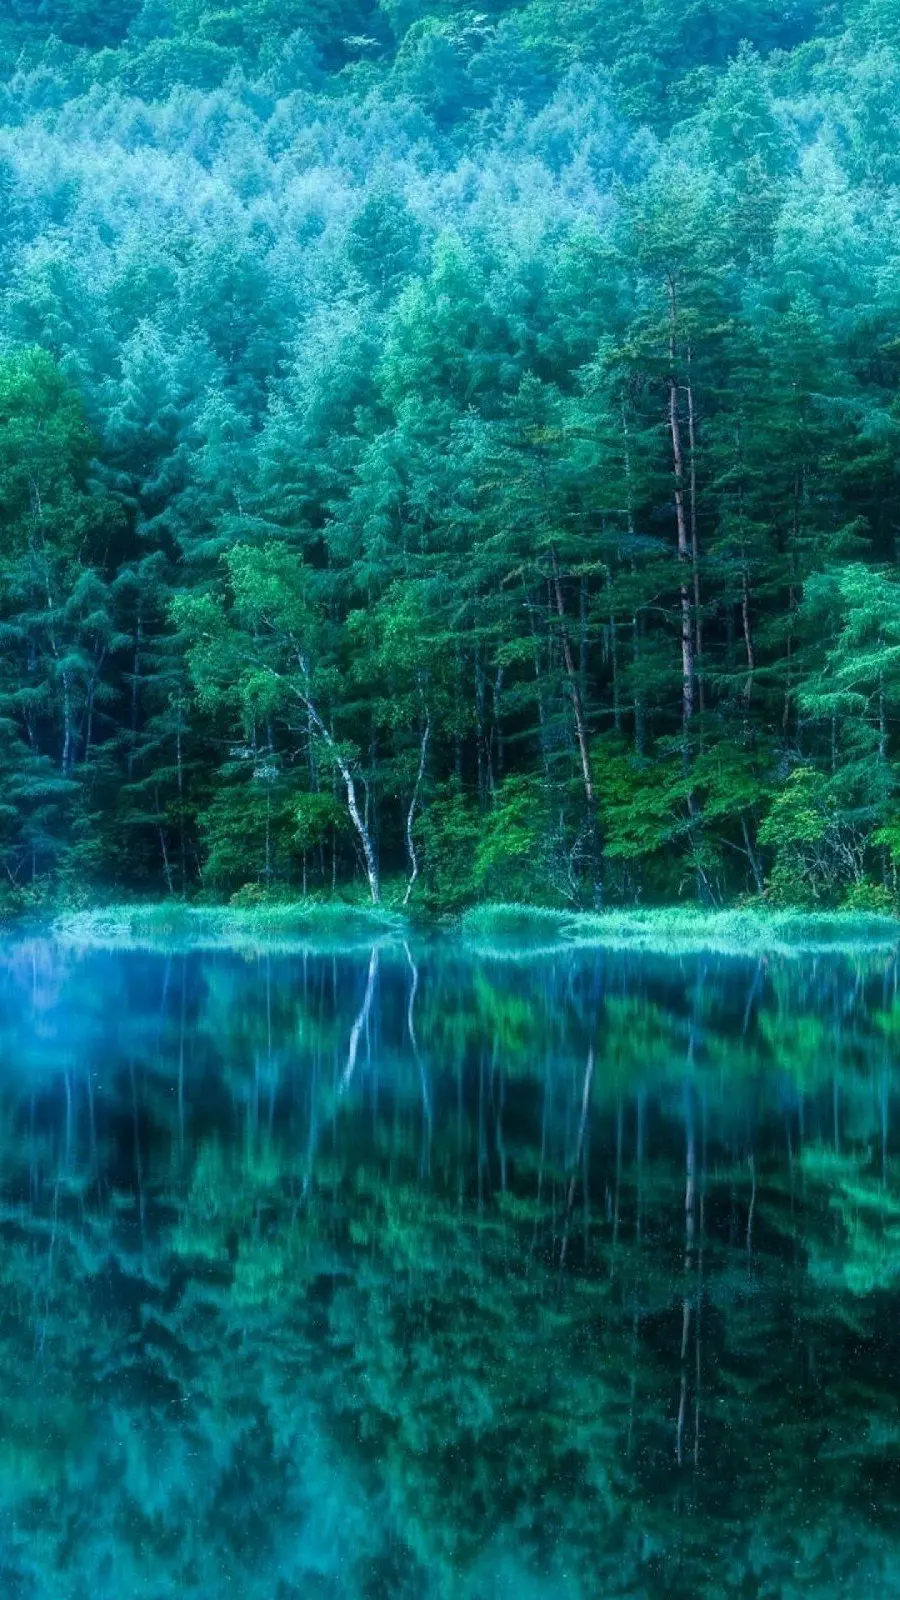 عکس استوک جادویی از طبیعت سبز اطراف دریاچه با تم مه آلود